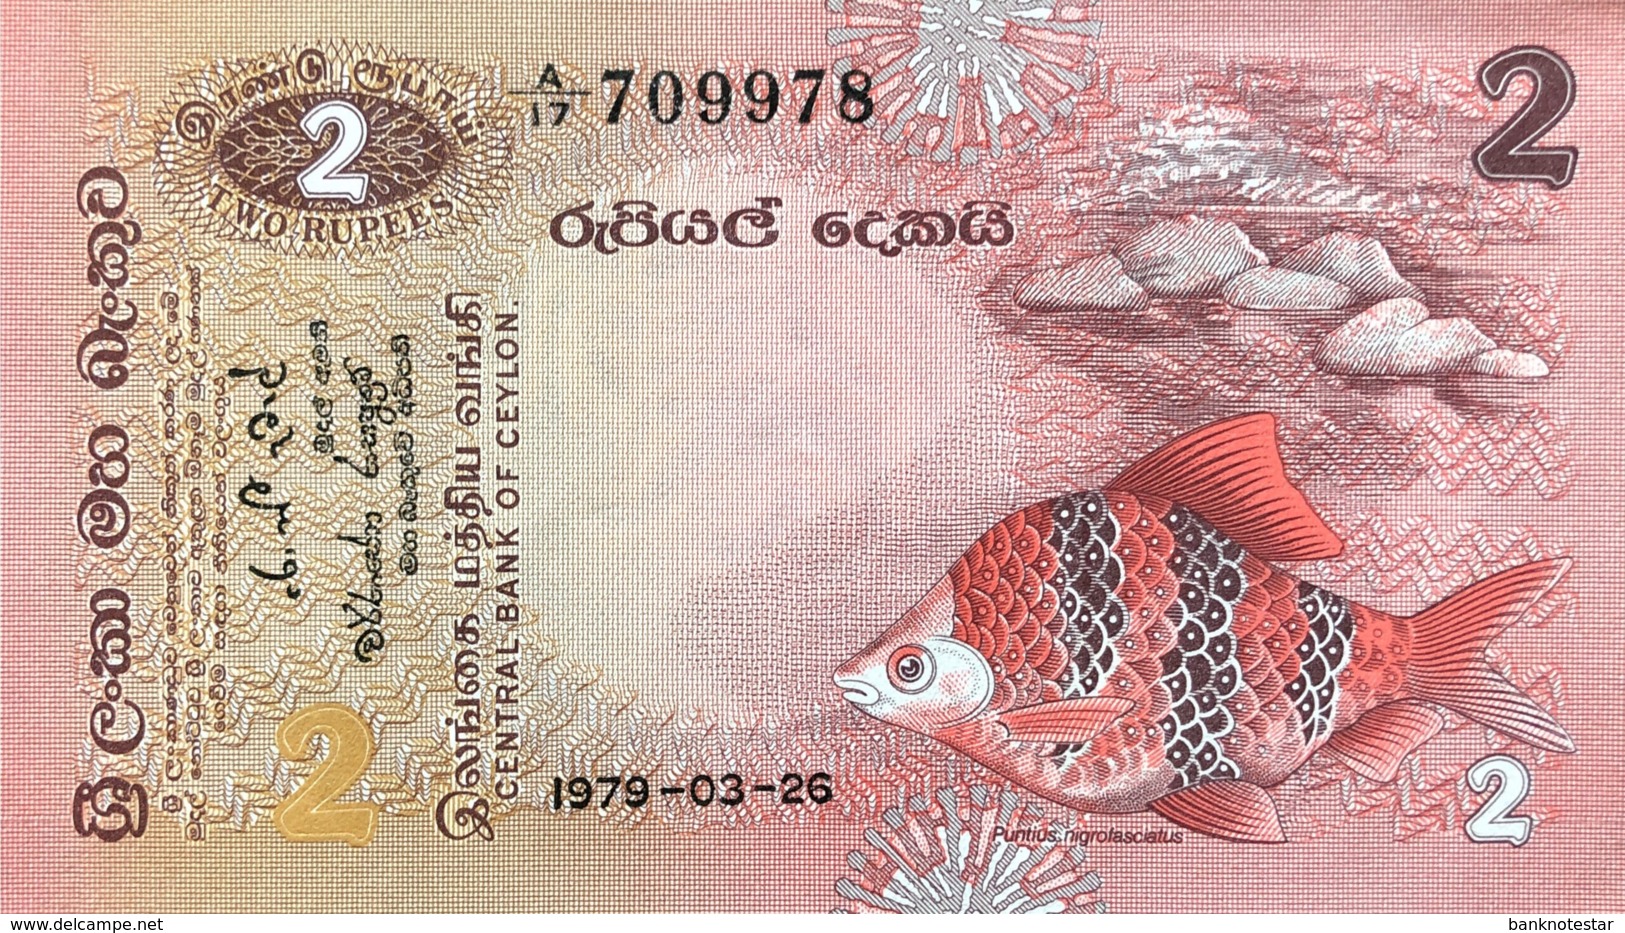 Sri Lanka 2 Rupees, P-83 (26.3.1979) - UNC - Sri Lanka